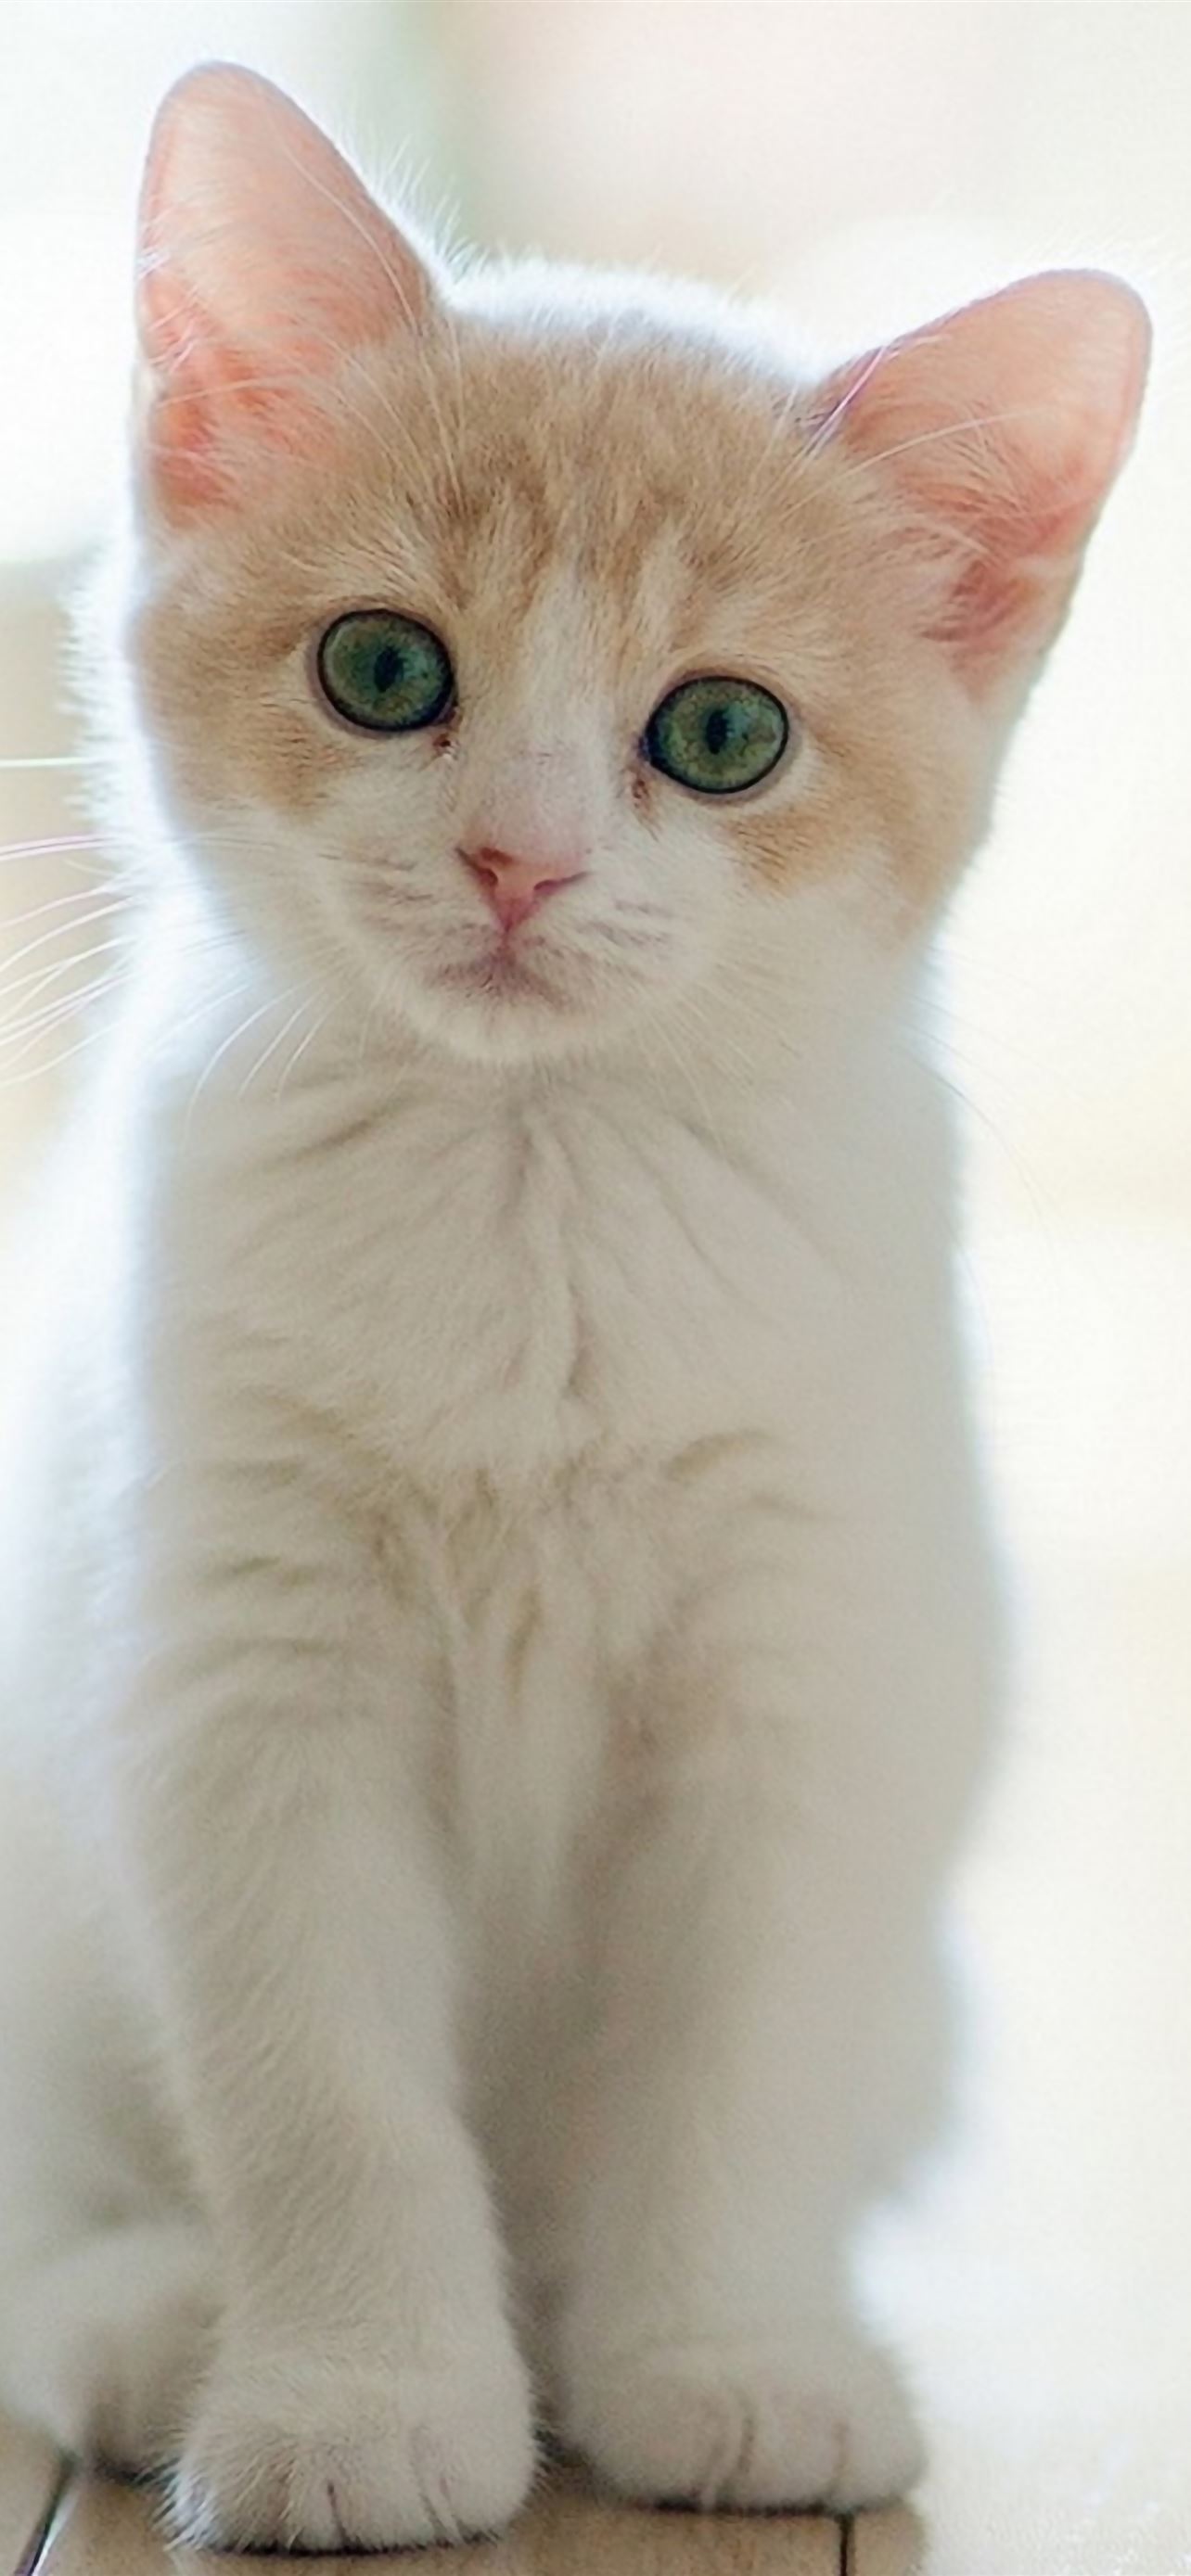 Chiếc mũi nhọn xinh xắn, đôi mắt to tròn sáng ngời và bộ lông mềm mại là những điều khiến cho mèo con trở thành một loài vật cưng đáng yêu. Nếu bạn thích những hình ảnh đáng yêu của loài mèo, thì không nên bỏ qua bức ảnh mèo con này.